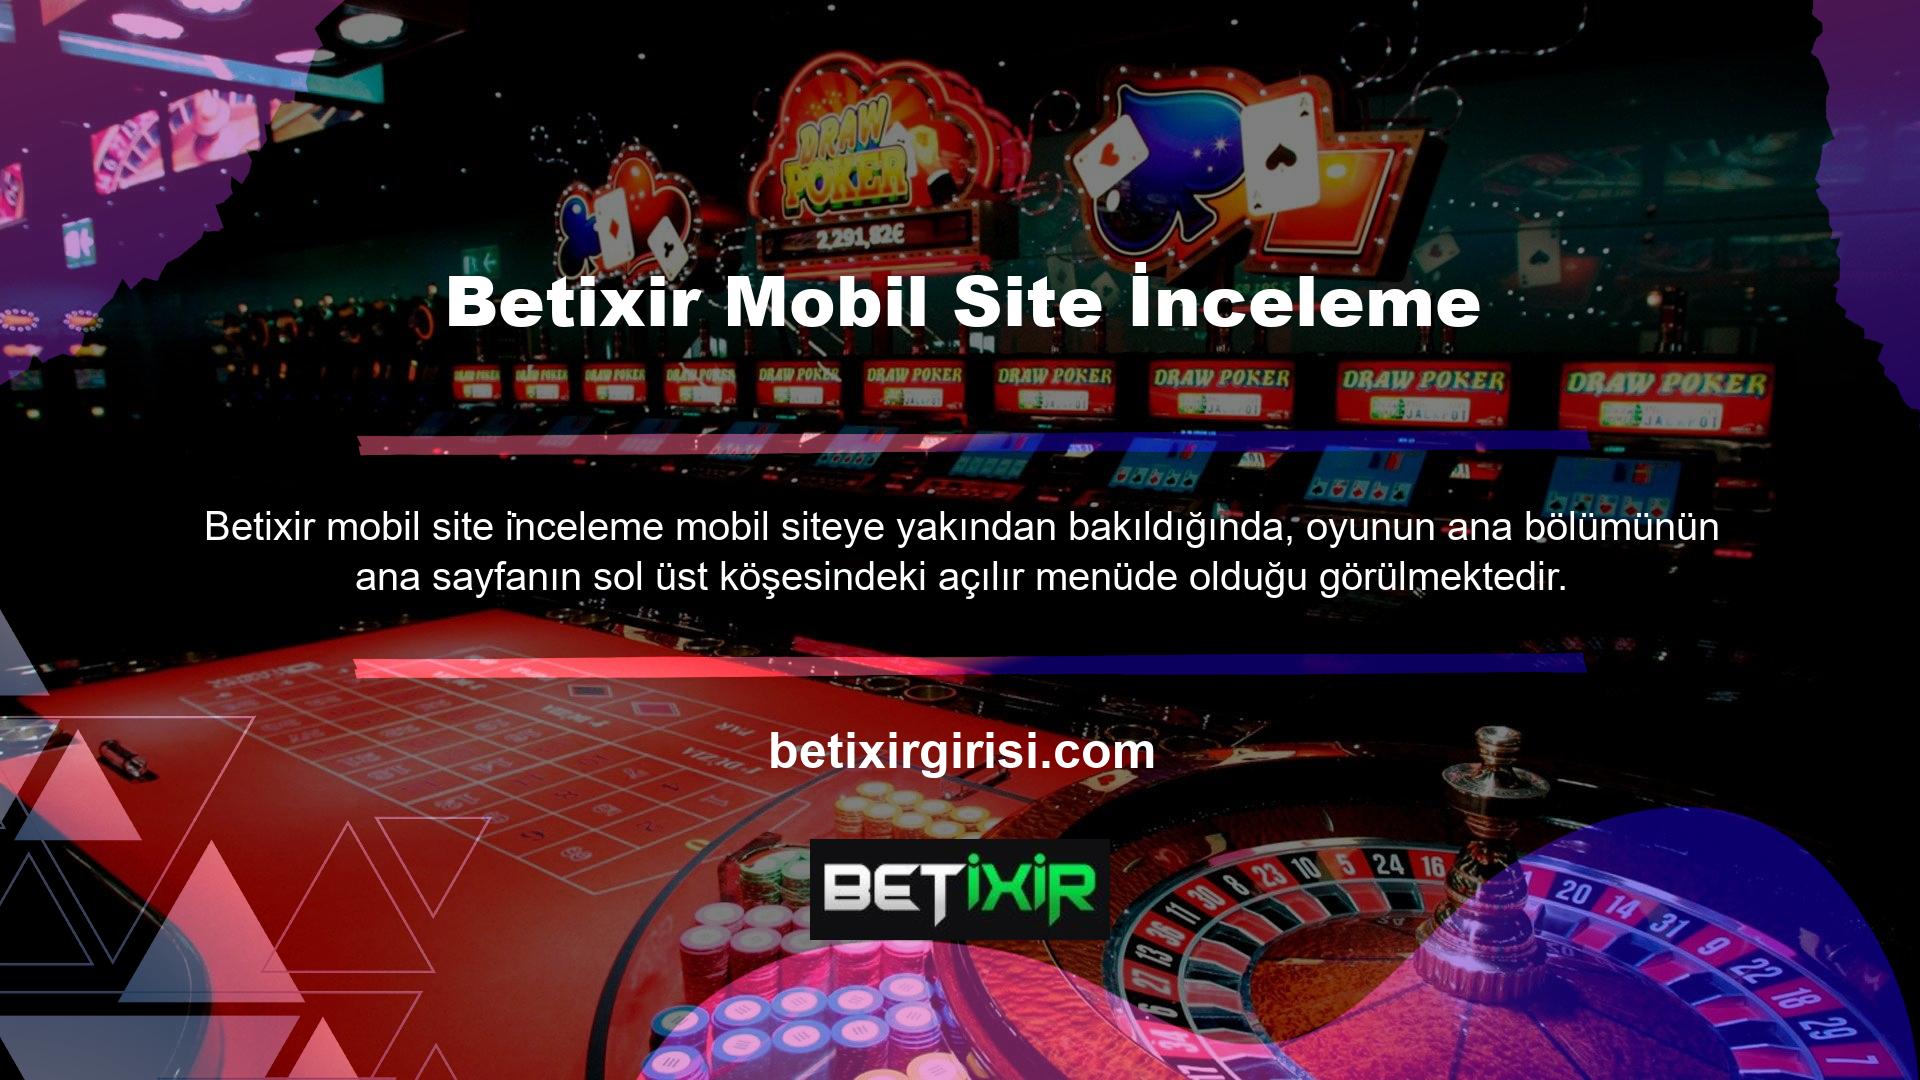 Betixir mobil sitesinin ana sayfasının sağ üst köşesinde Türkçe, İngilizce, Almanca ve Fransızca dillerini destekleyen hızlı eşleştirme çubuğu bulunmaktadır